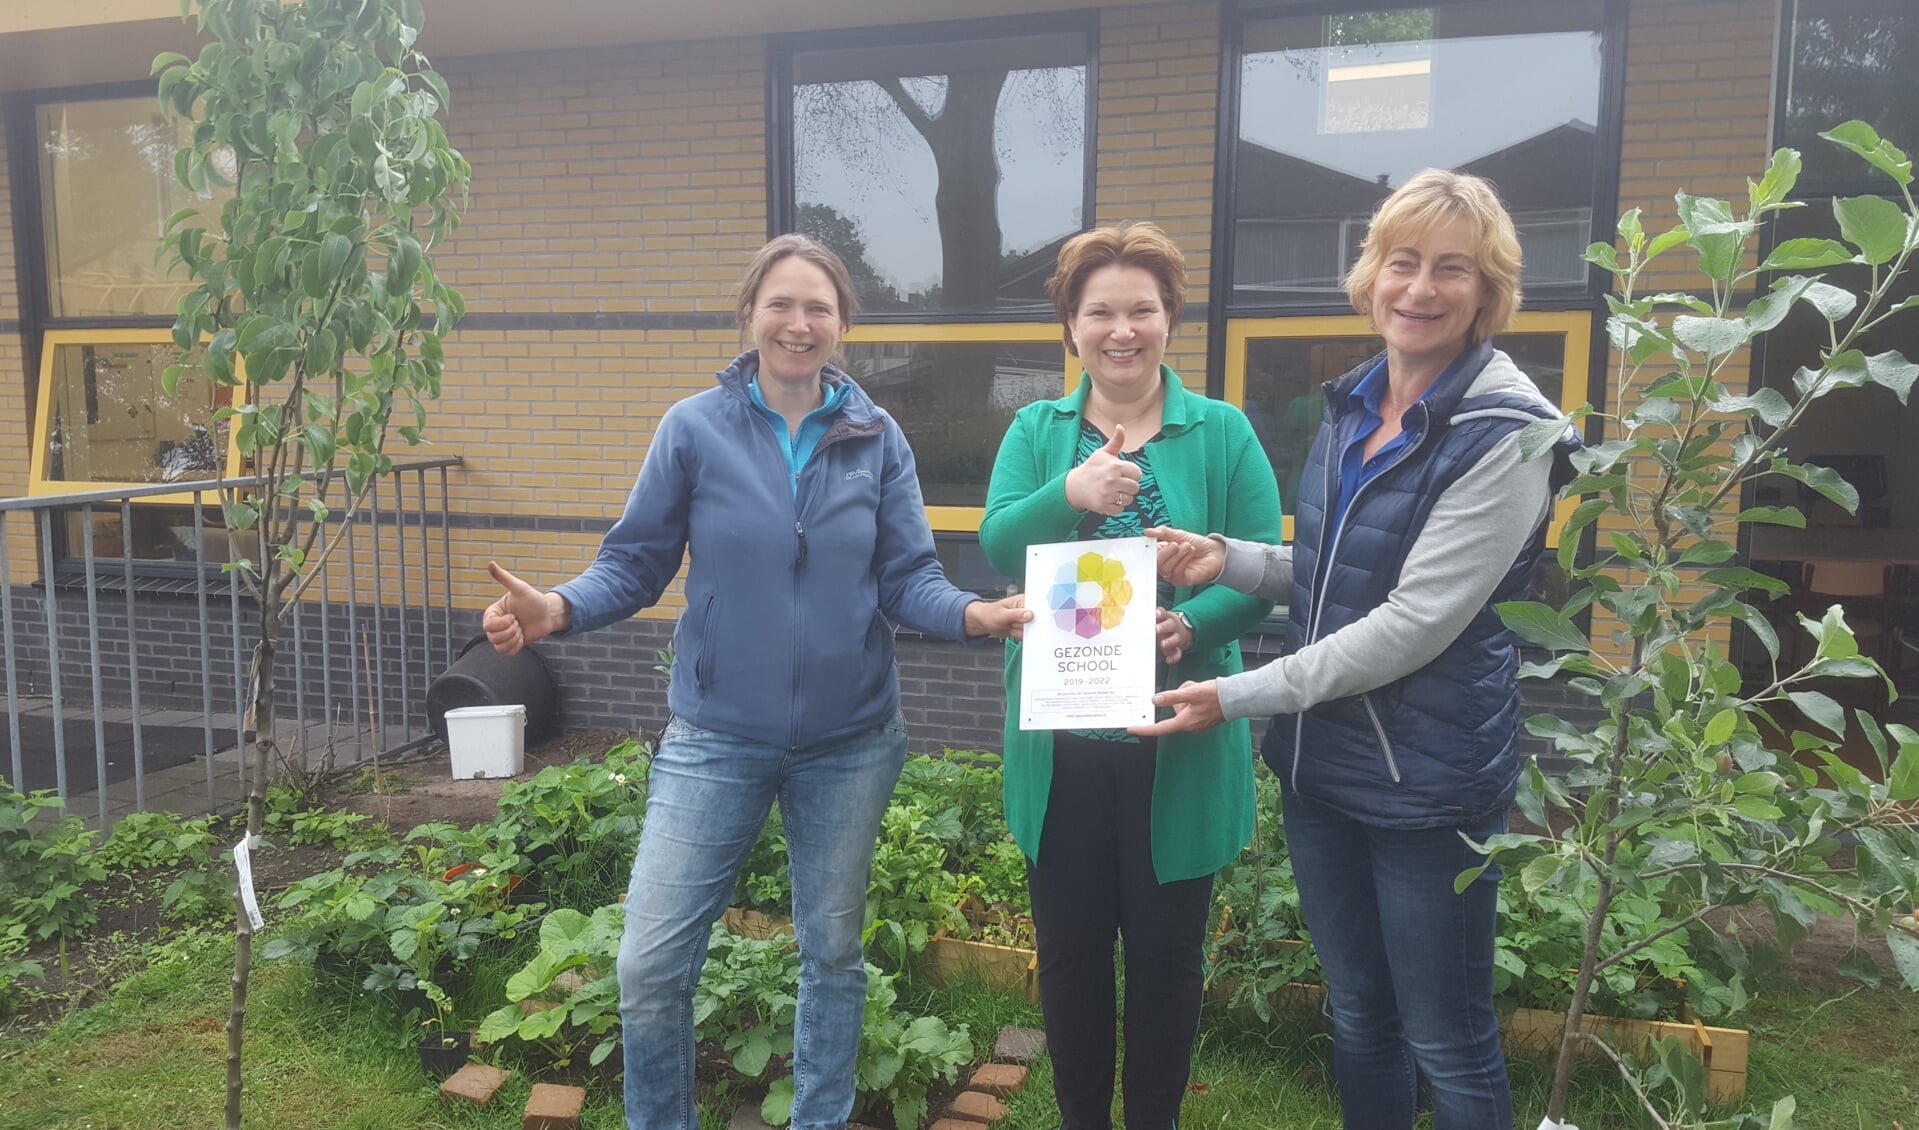 Wethouder Chantal Broekhuis reikt het vignet Gezonde School uit aan natuurouders Marrit Profittlich (l) en Liesbeth van Rijsbergen (r)